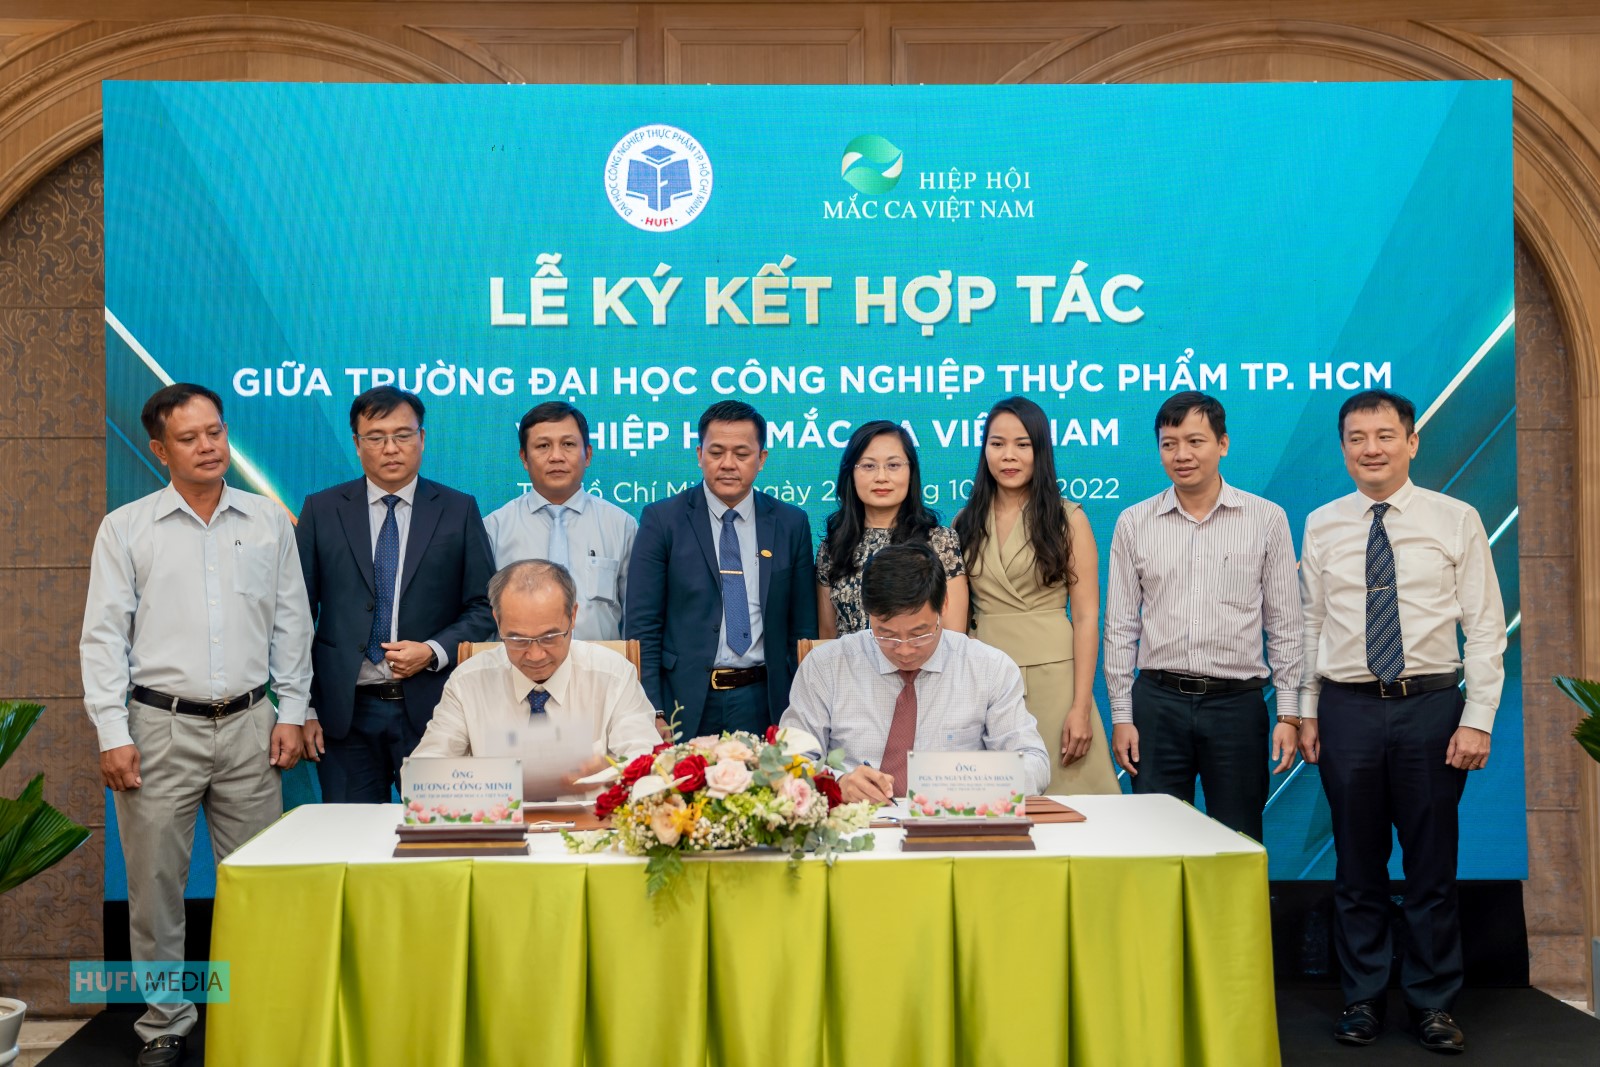 Ký kết hợp tác toàn diện giữa Trường ĐH Công nghiệp Thực phẩm TP.HCM và Hiêp hội Mắc ca Việt Nam